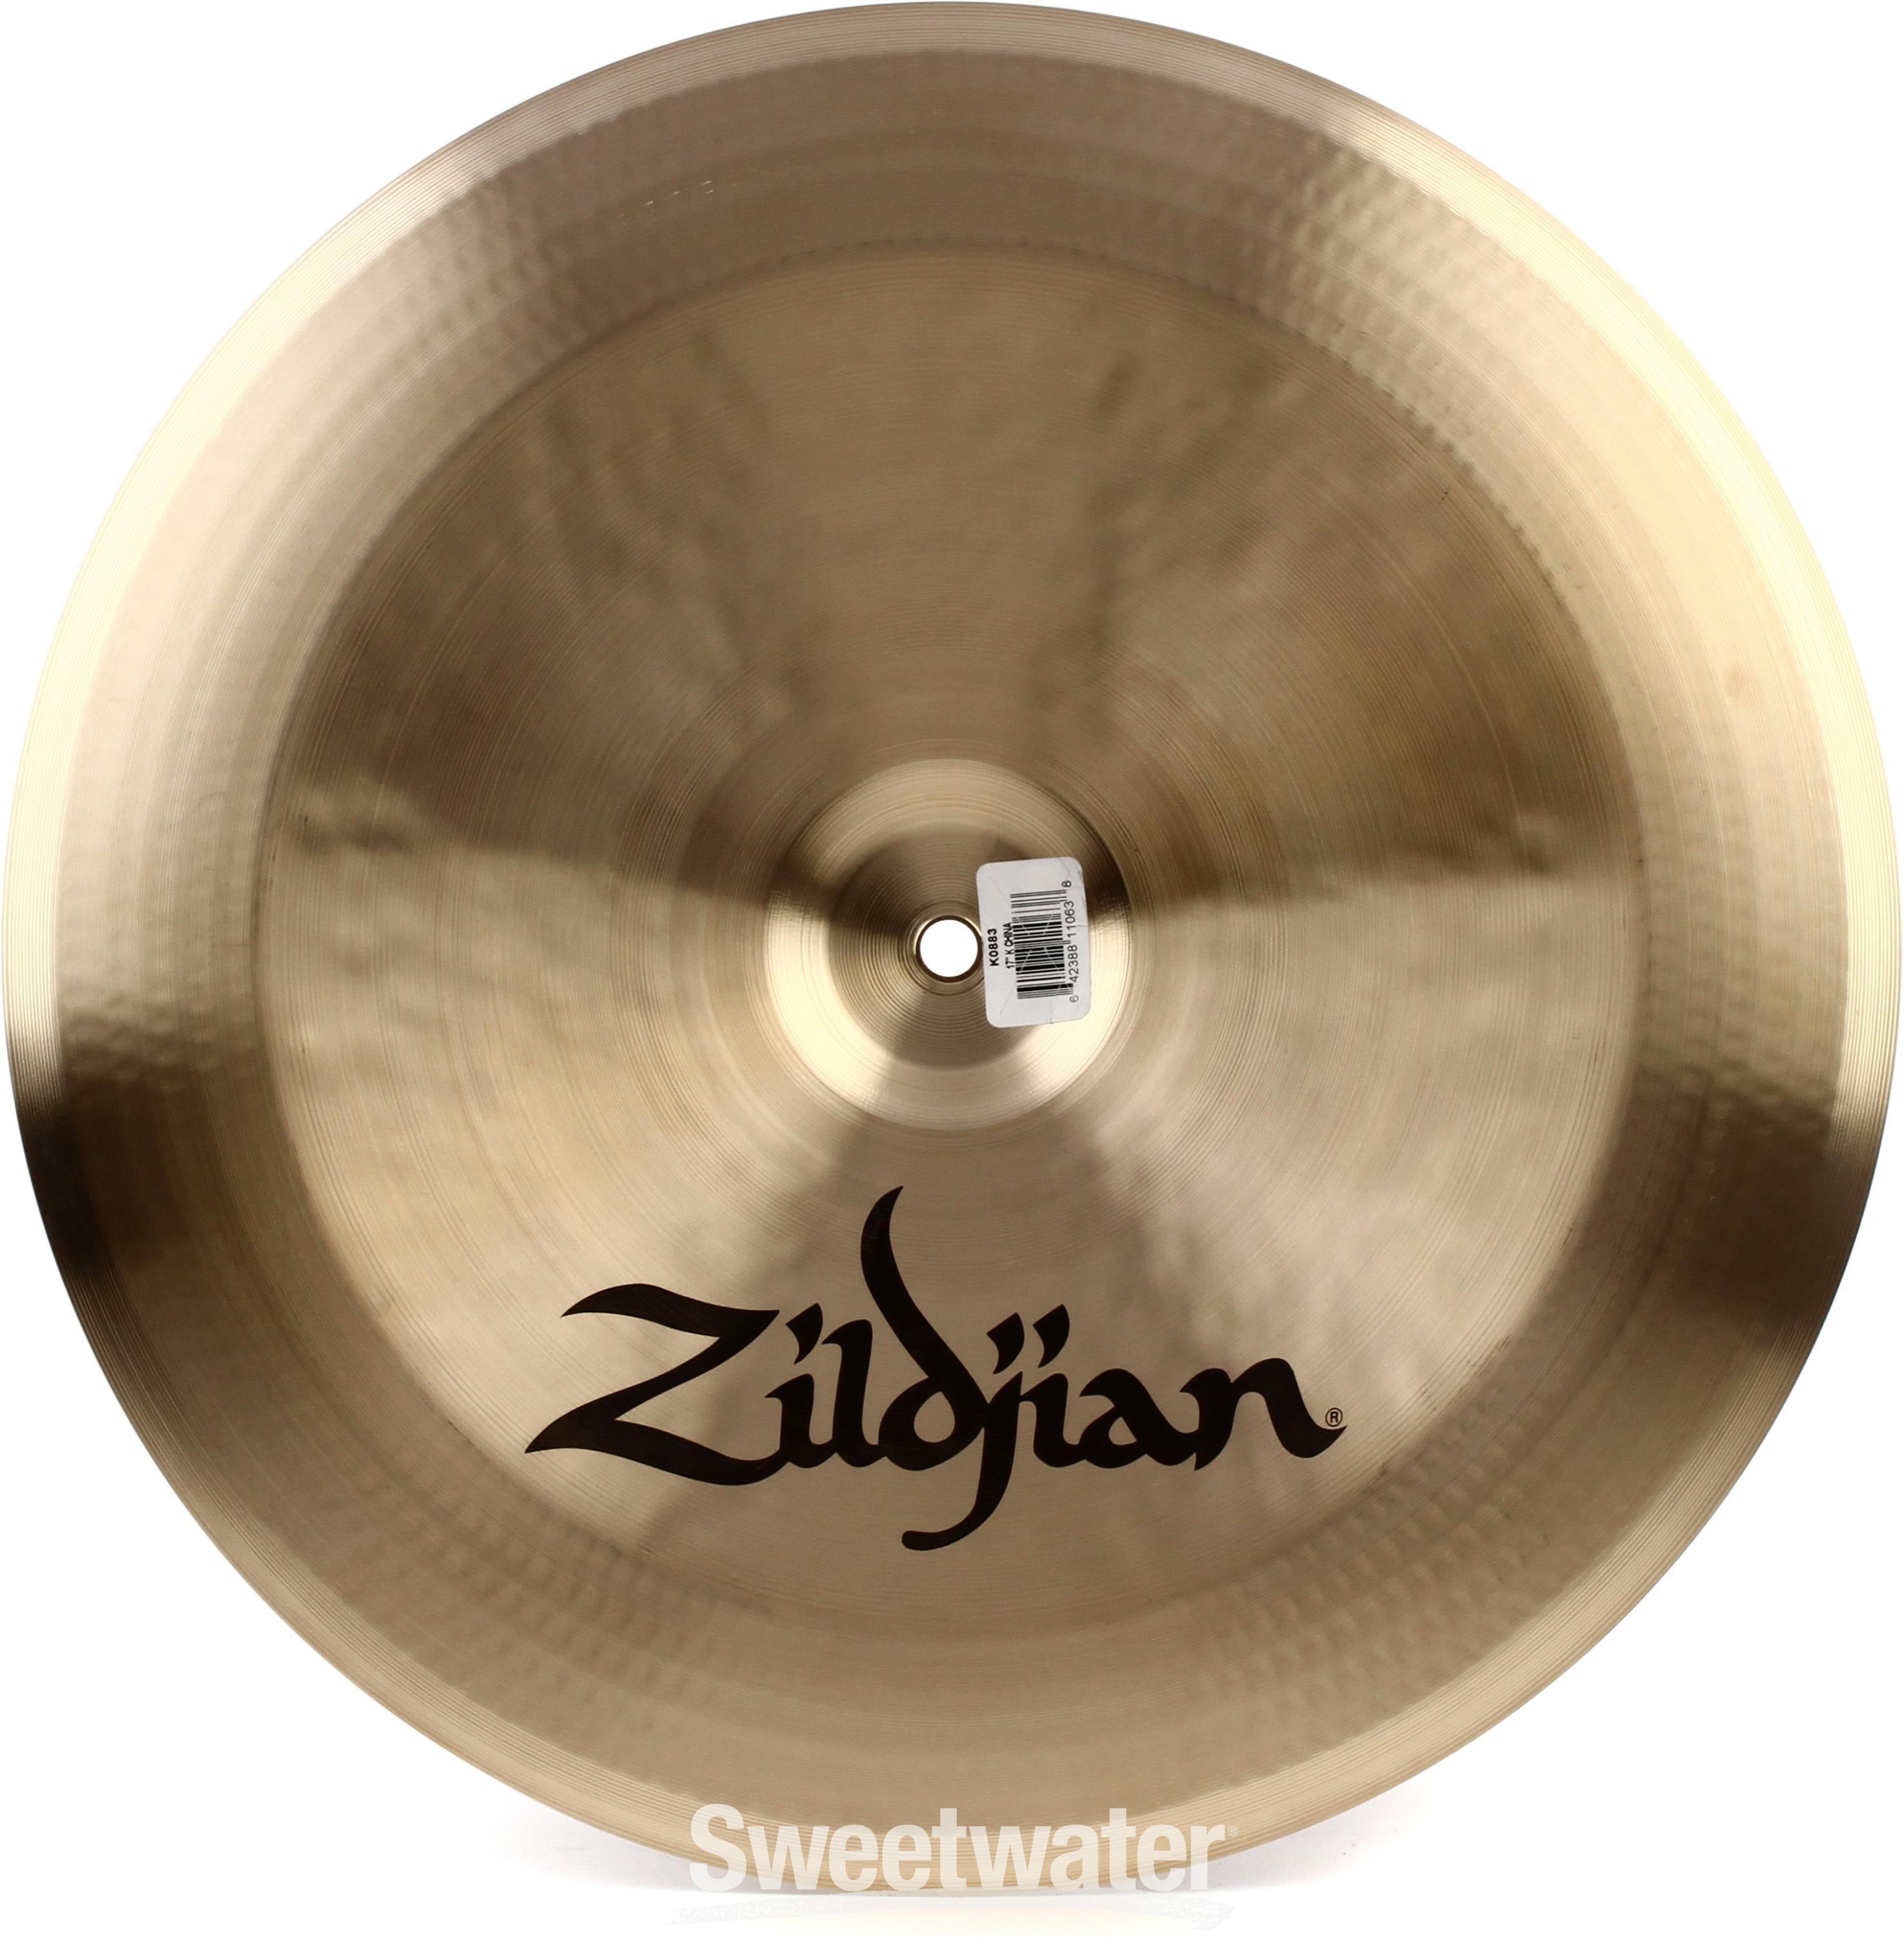 17 inch K Zildjian China Crash Cymbal - Sweetwater